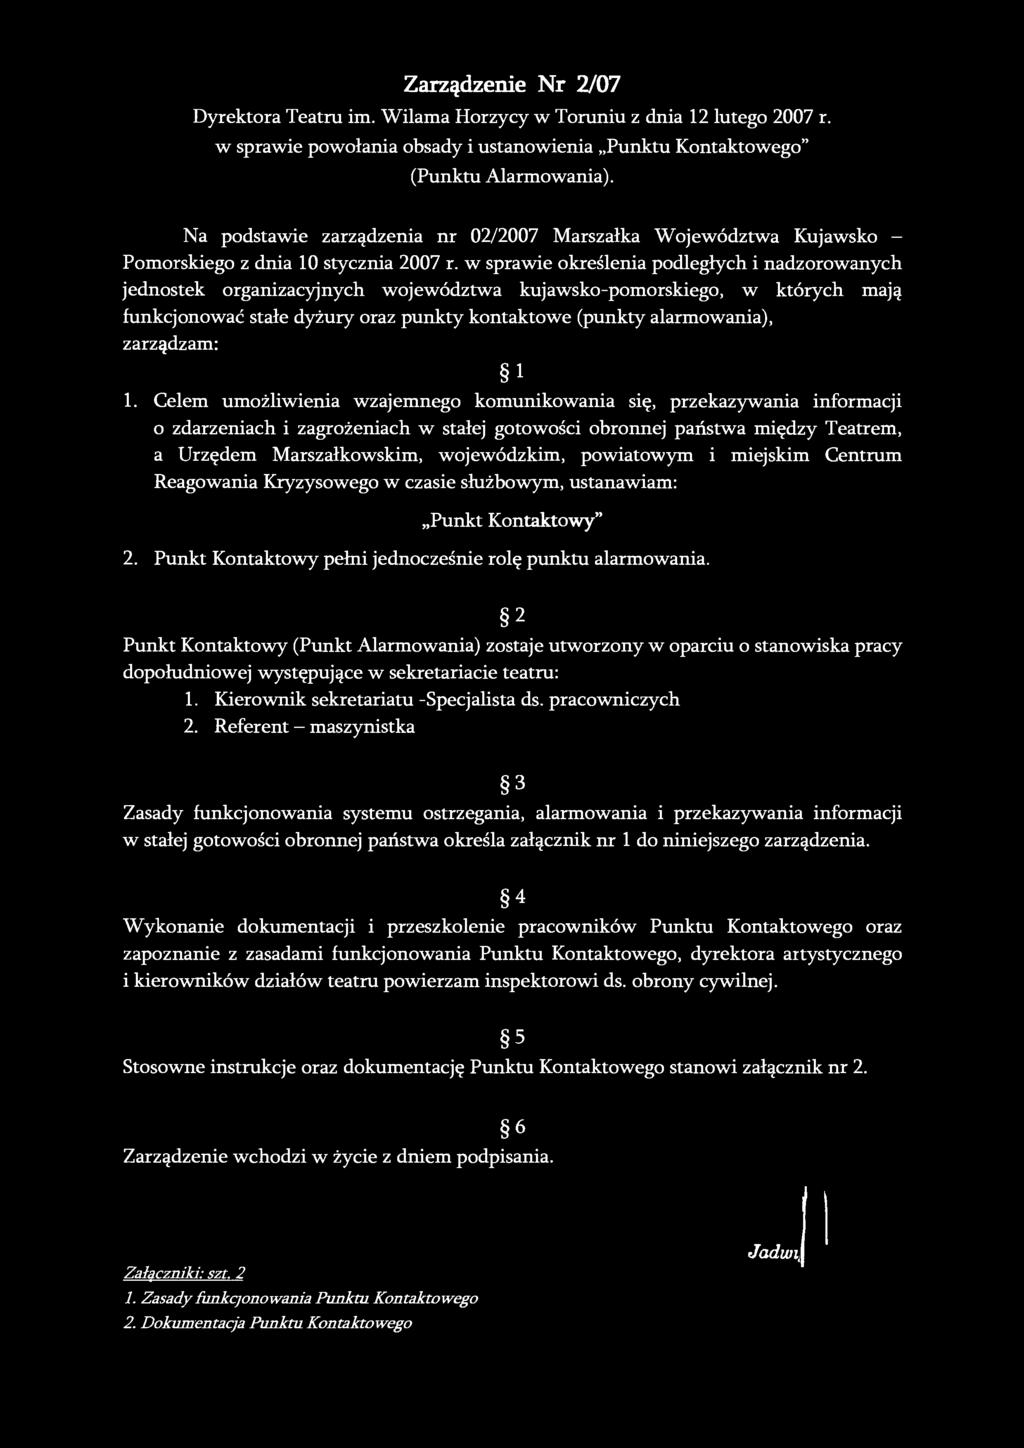 Zarządzenie Nr 2/07 Dyrektora Teatru im. Wilama Horzycy w Toruniu z dnia 12 lutego 2007 r. w sprawie powołania obsady i ustanowienia Punktu Kontaktowego" (Punktu Alarmowania).